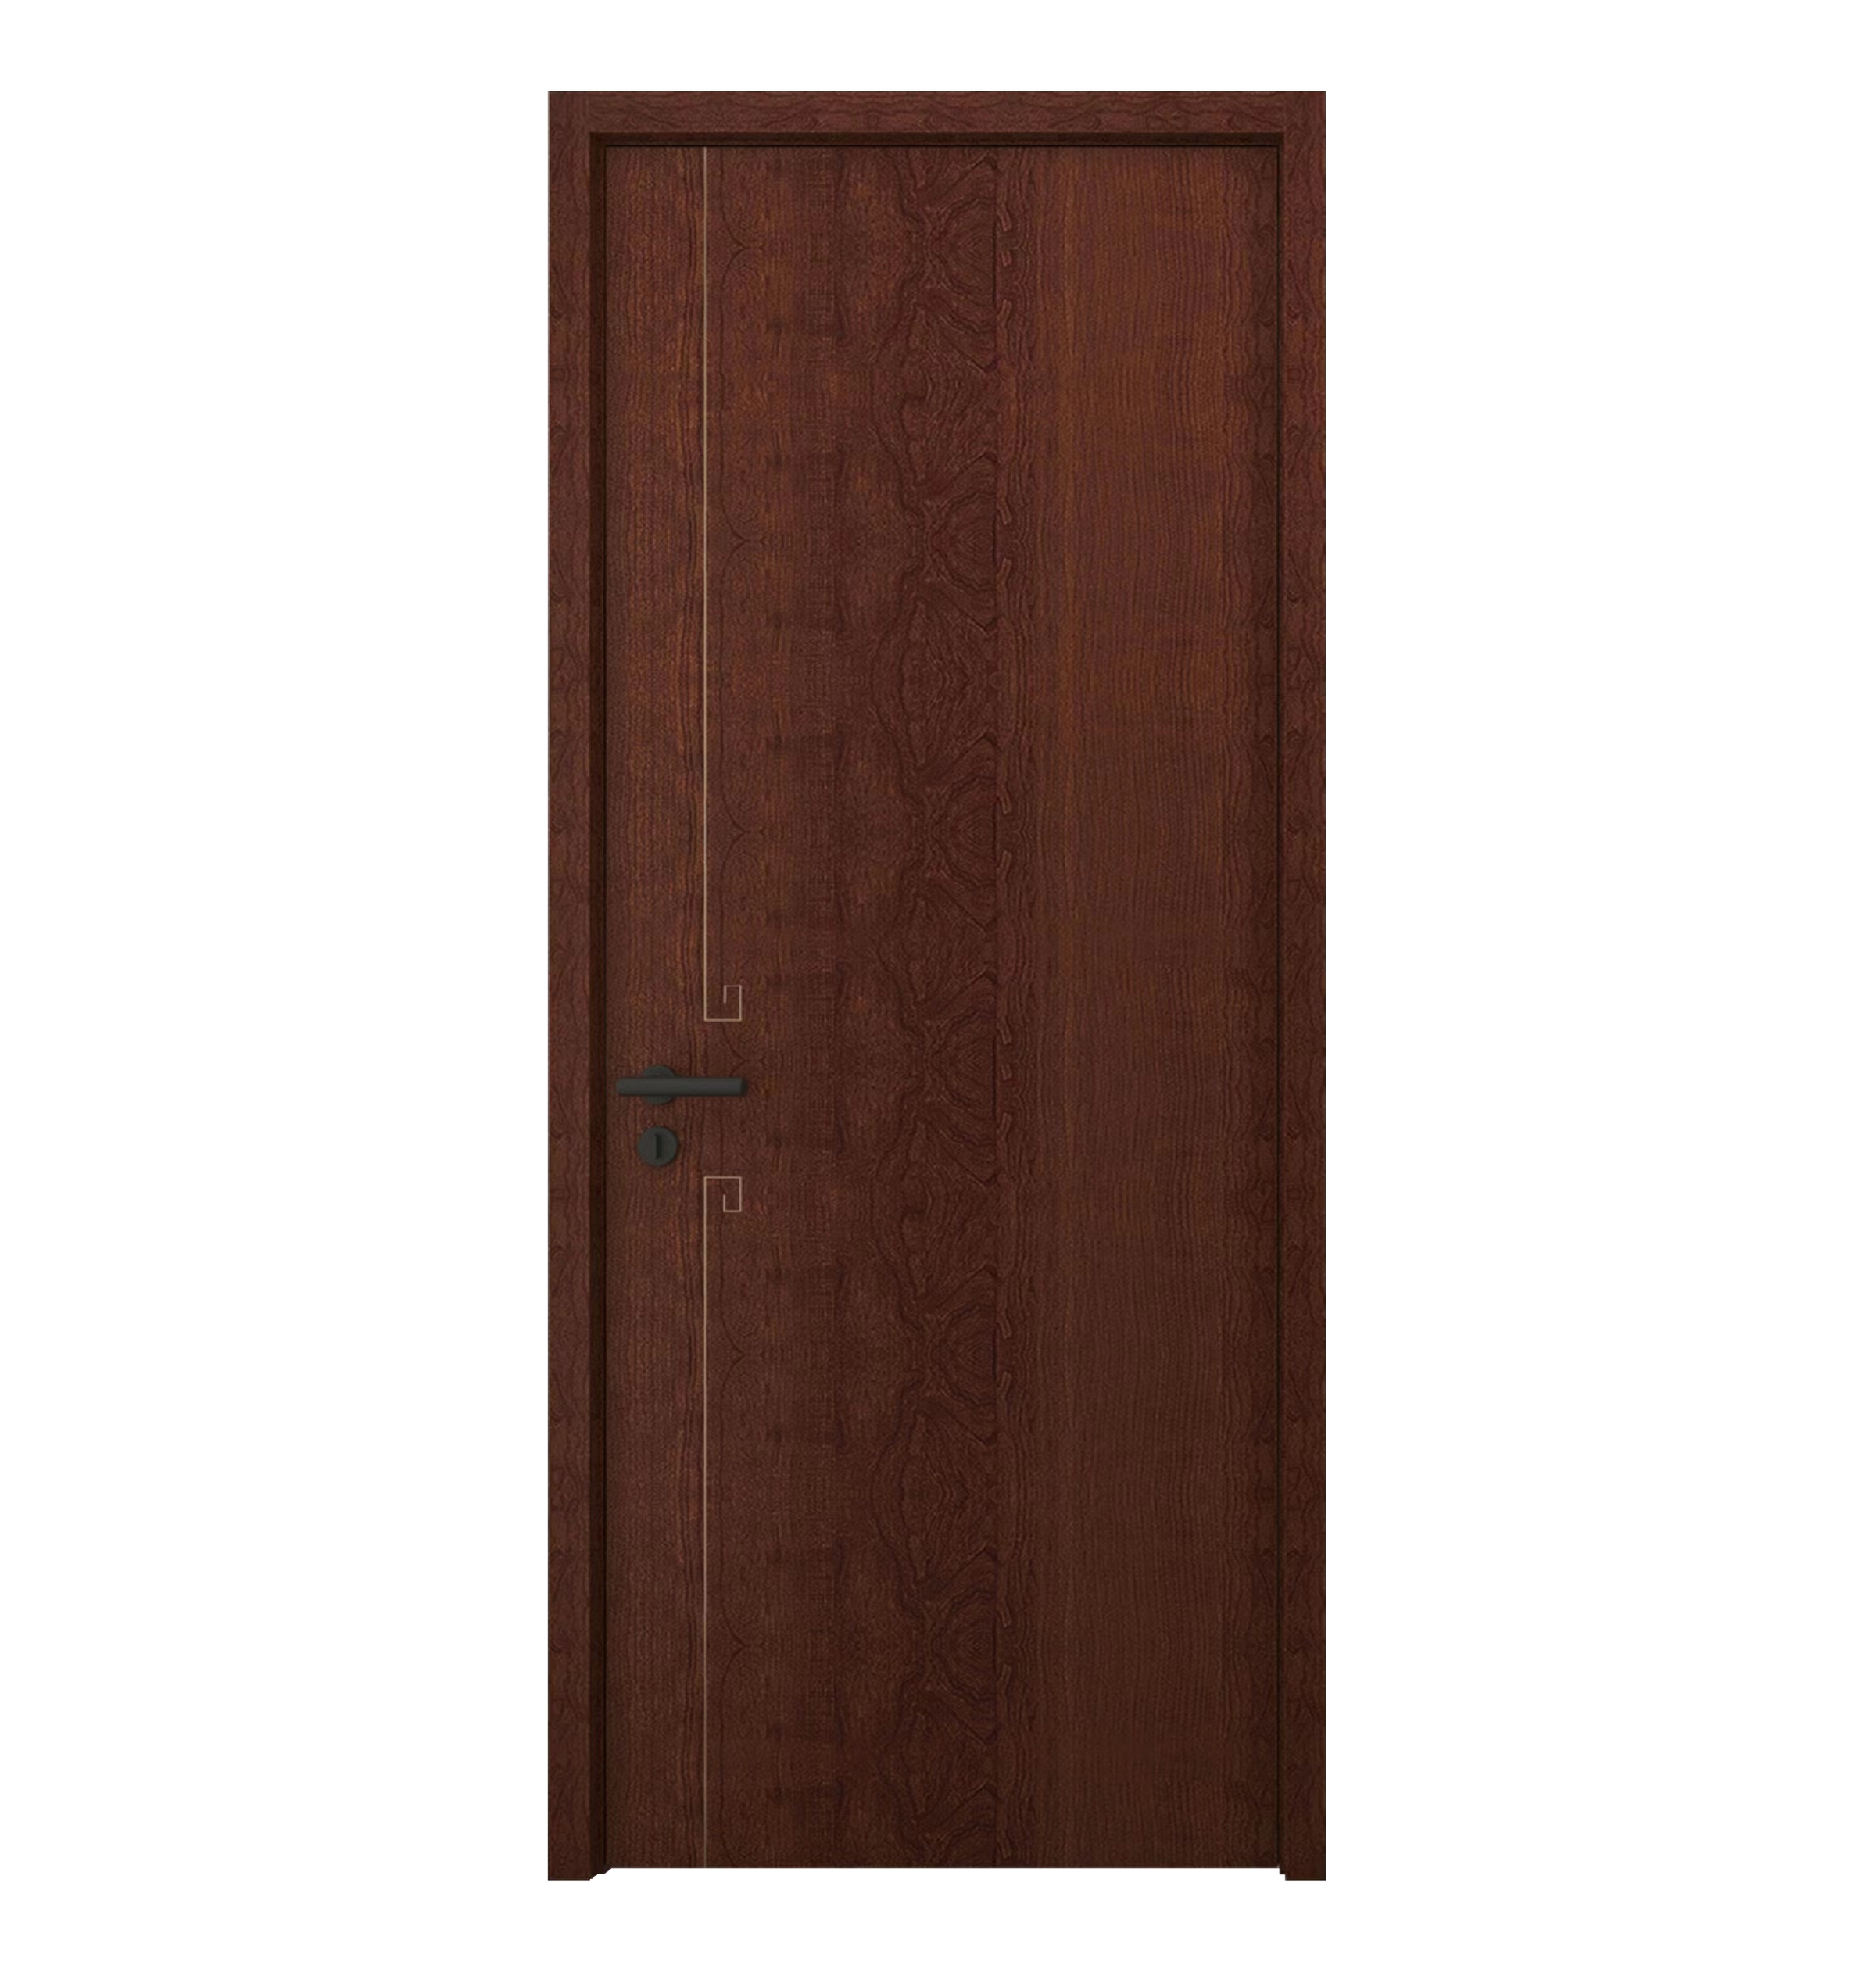 Modern Interior Wood Door Designs Hotel Wood Bedroom Door